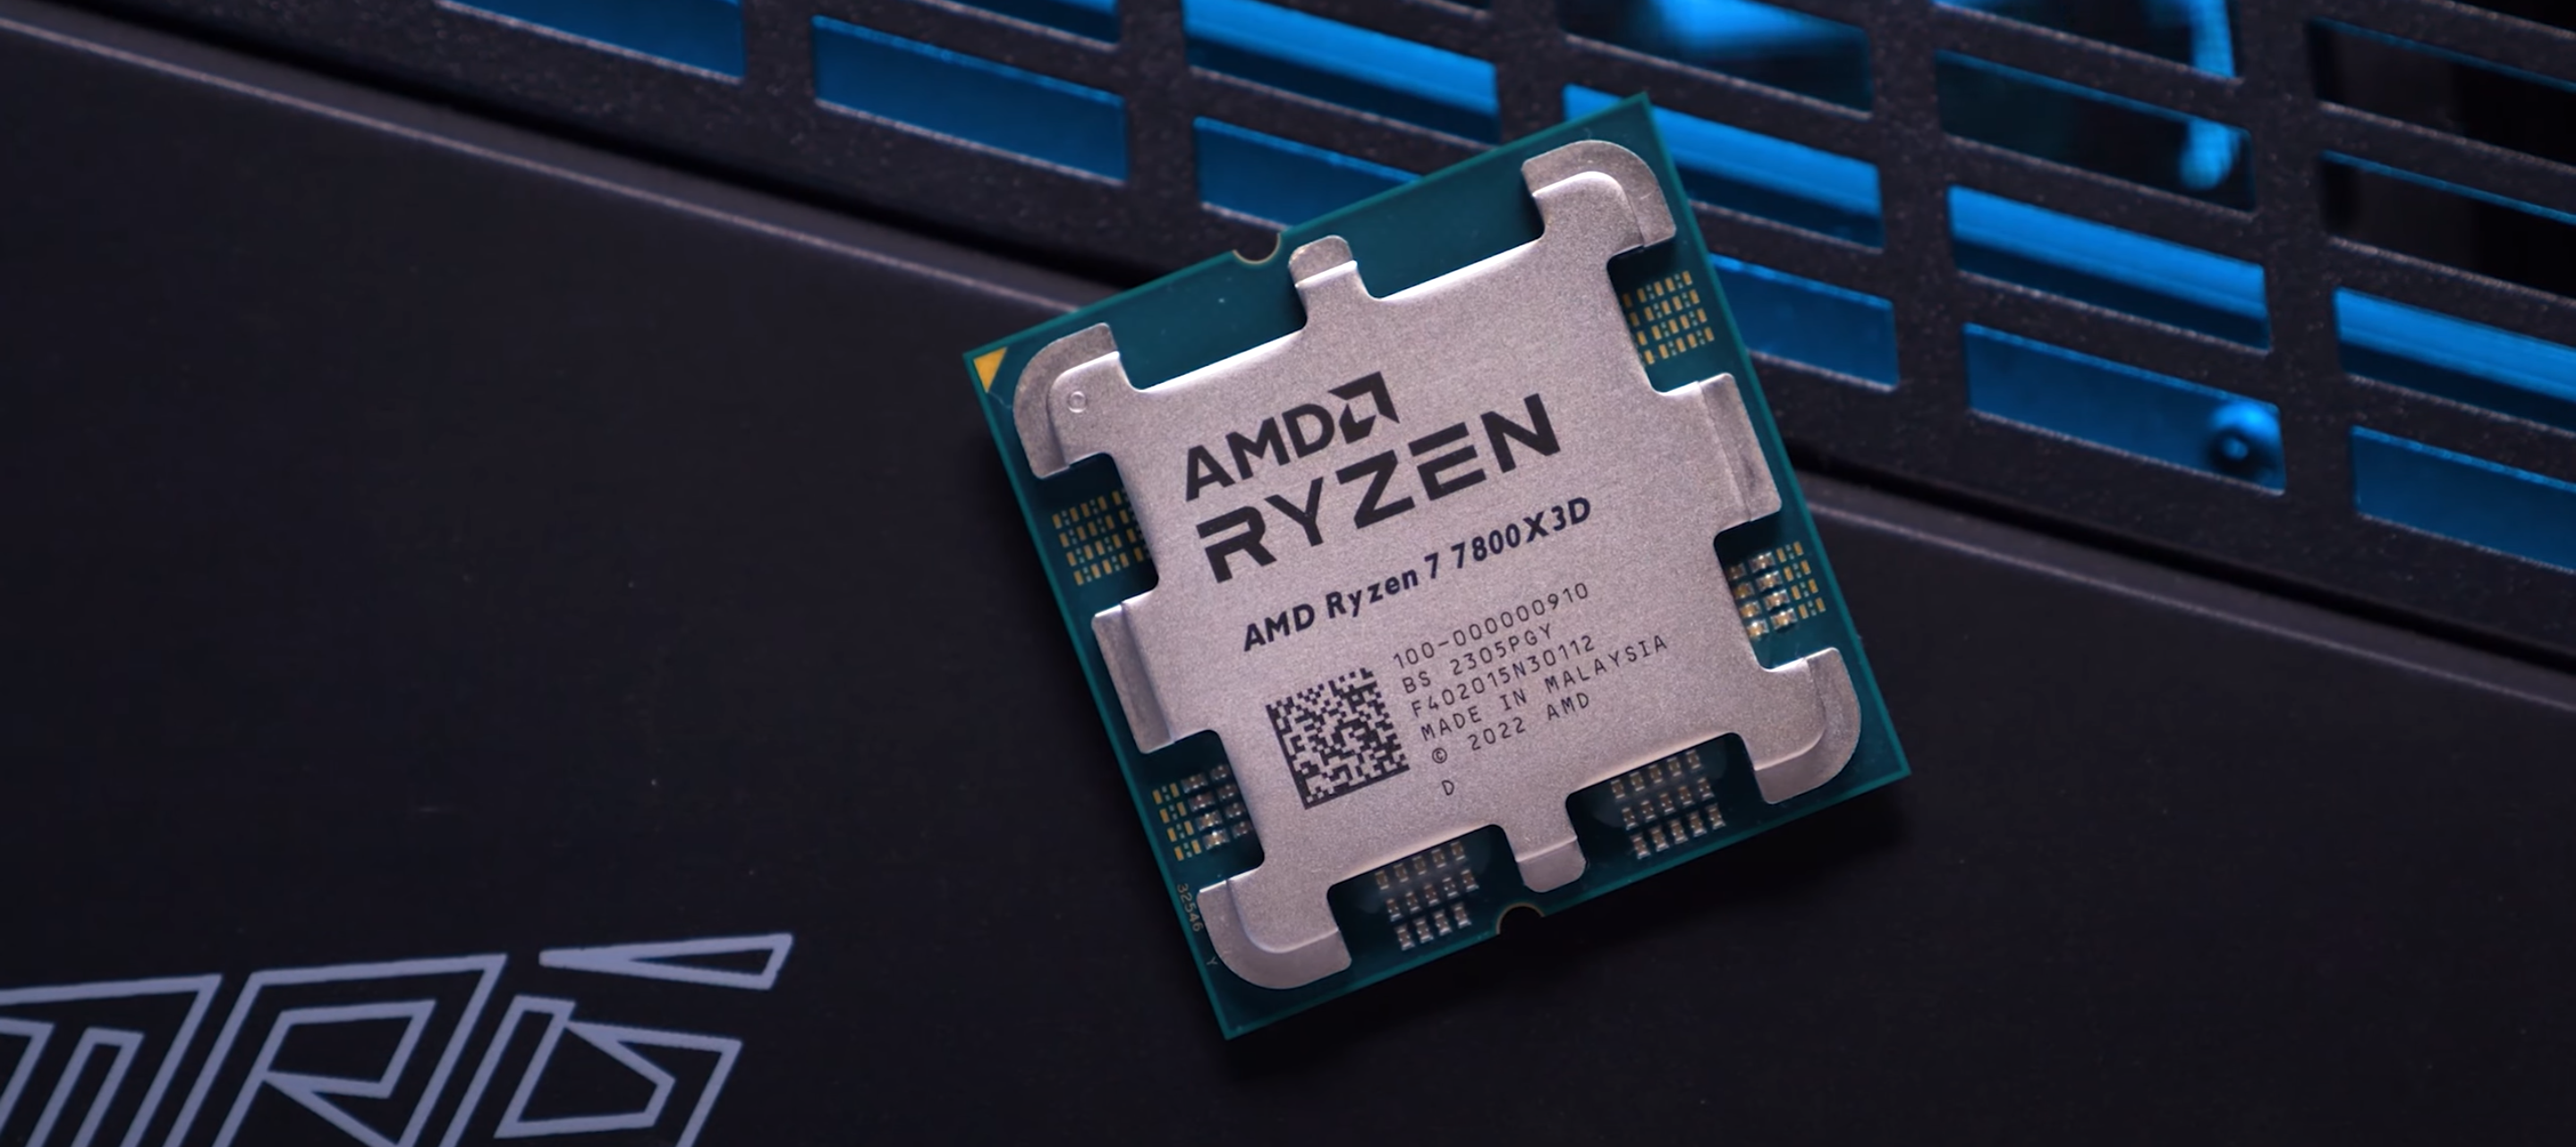 Райзен 7 7800x3d купить. Ryzen 7 7800x. Процессор Ryzen 7800x3d. AMD lga1718. 7800x3d.